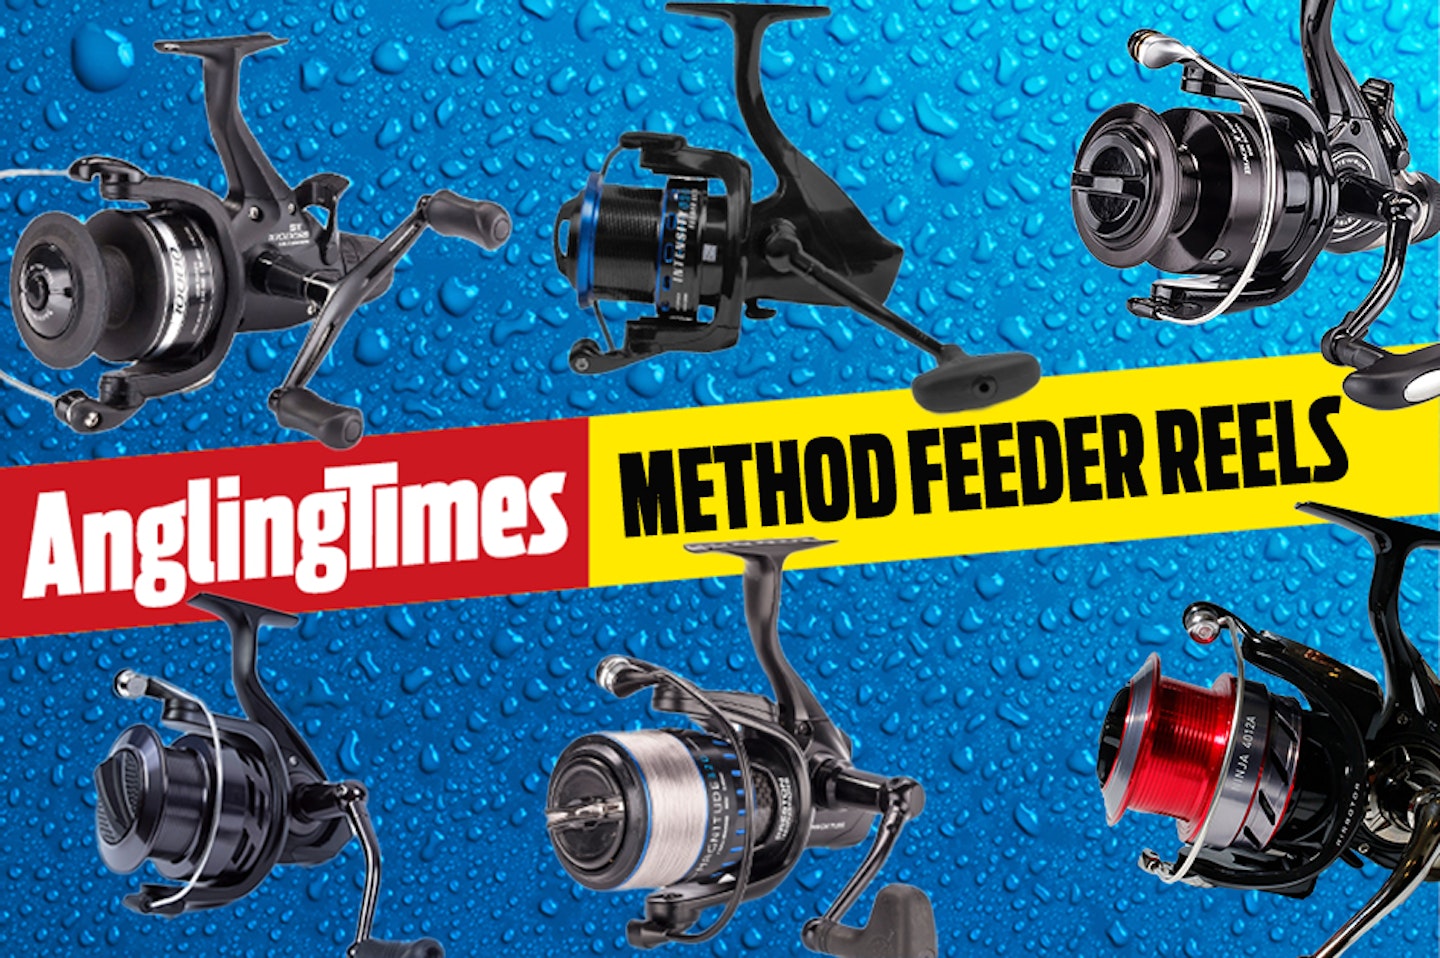 The best reels for method feeder fishing